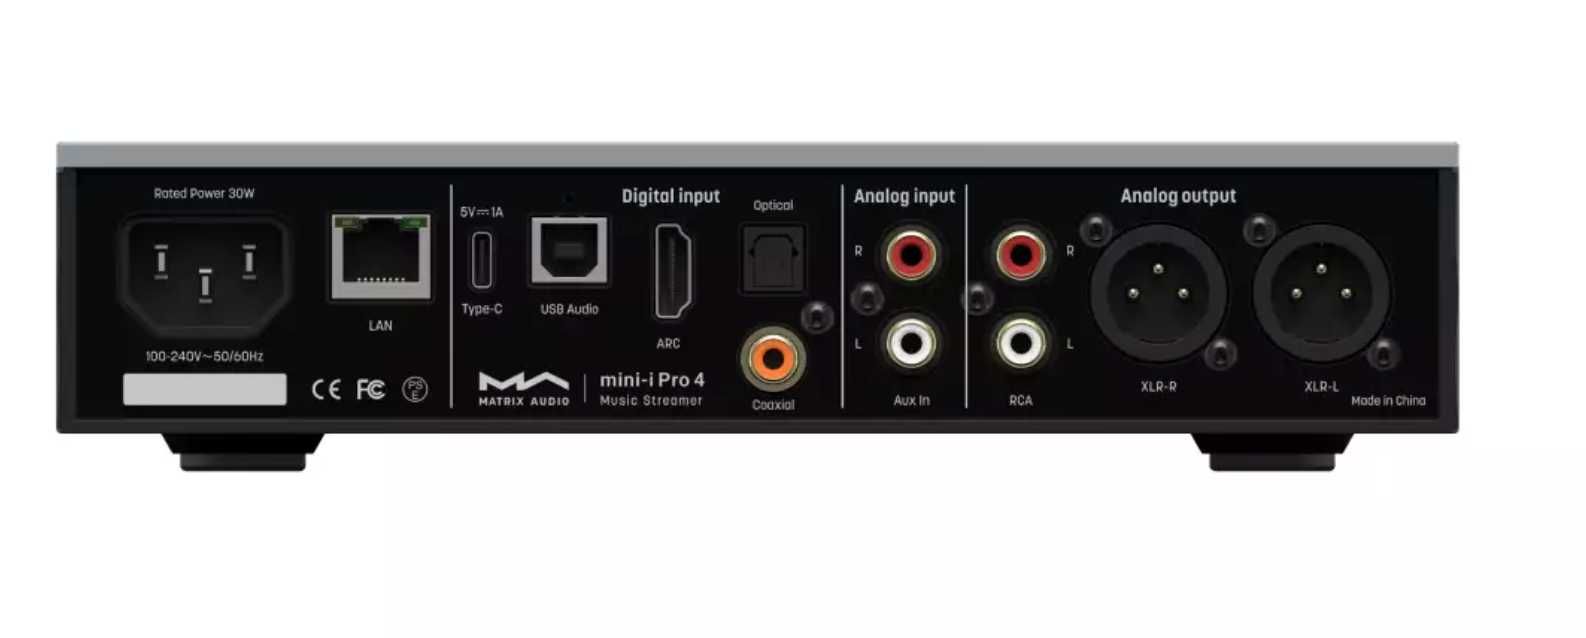 Matrix audio Mini-i Pro 4 streamer combo - wzmacniacz słuchawkowy nowy